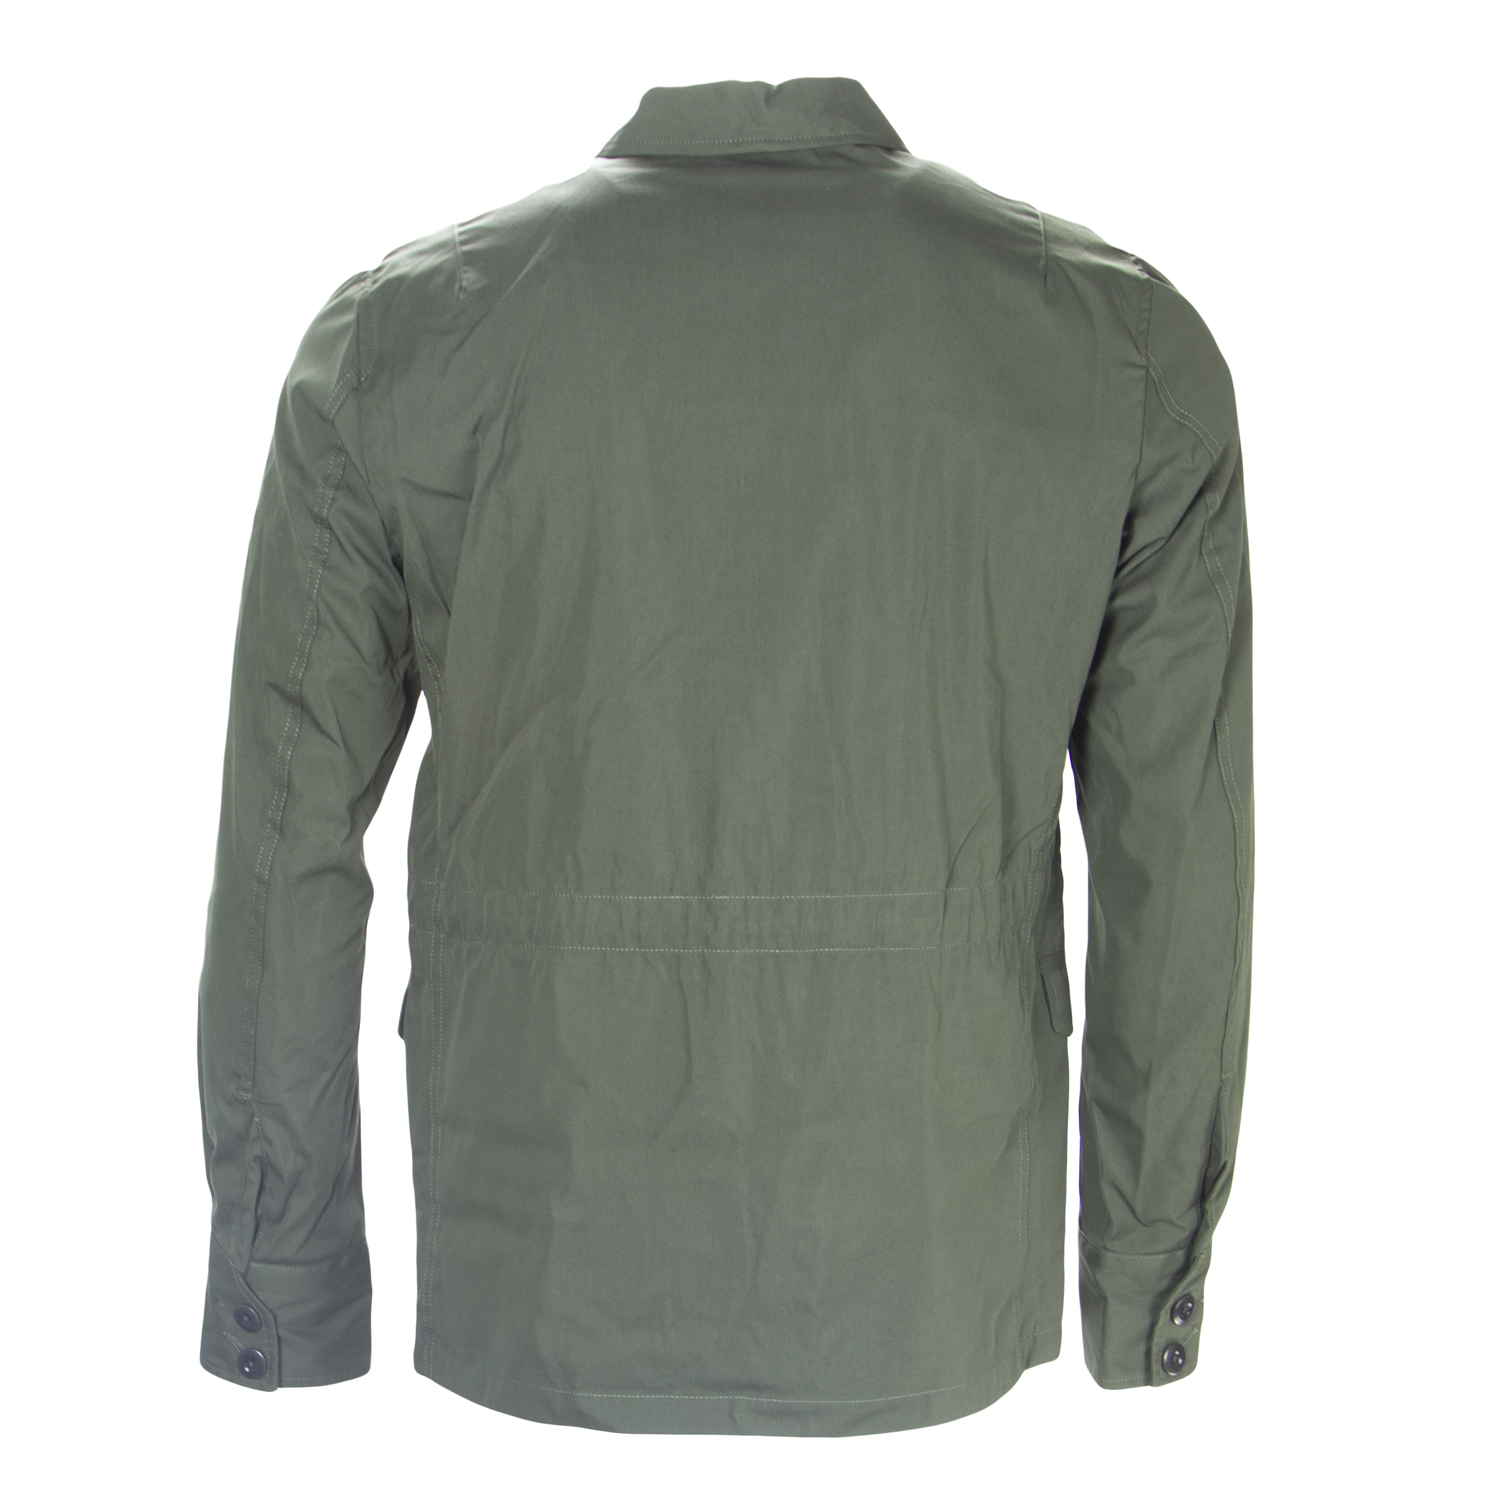 SPIEWAK Men's Jungle Green M-43 Field Jacket $475 NEW | eBay